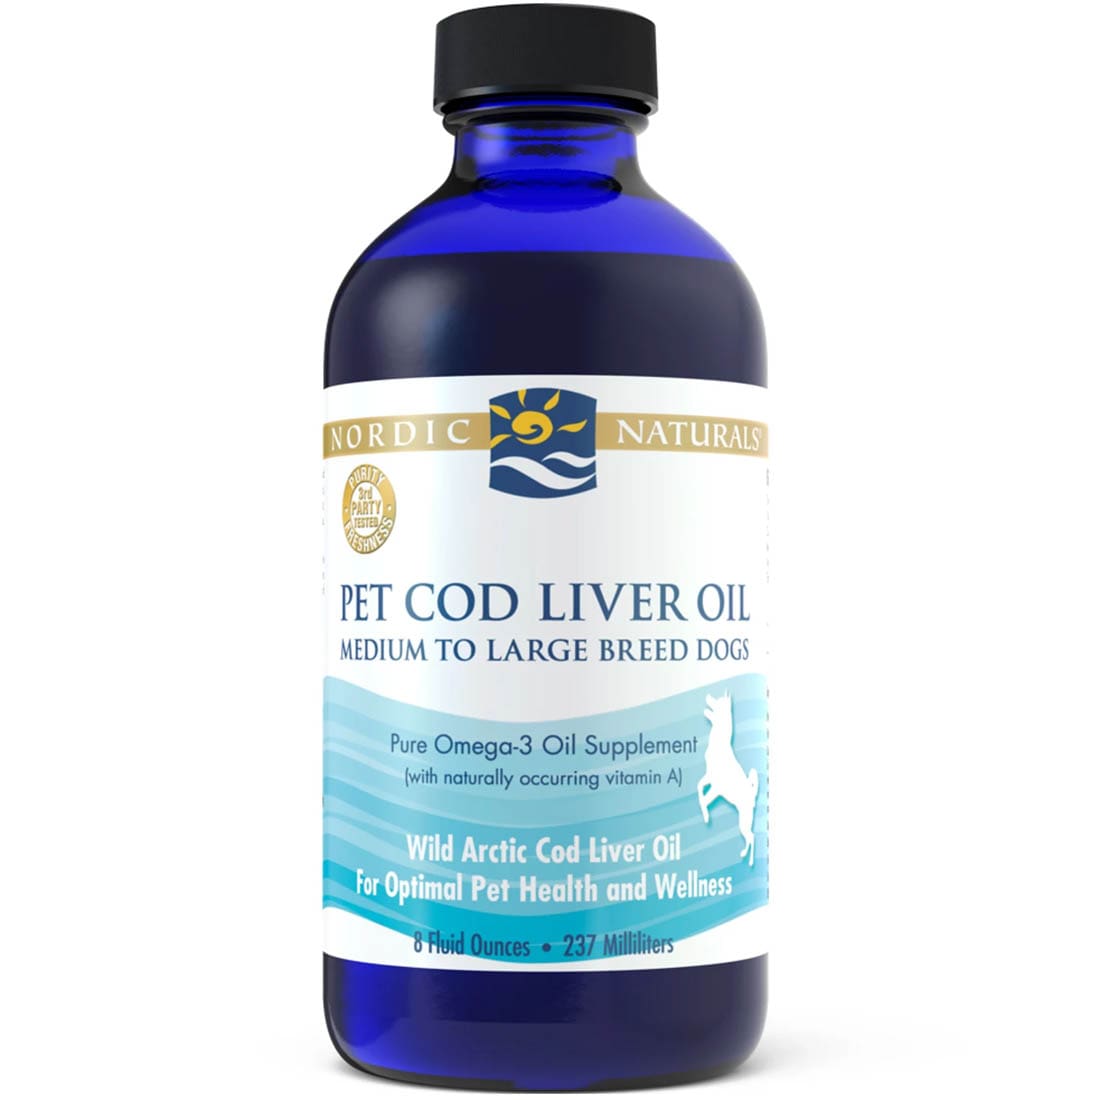 Nordic Naturals Pet Cod Liver Oil, 237ml